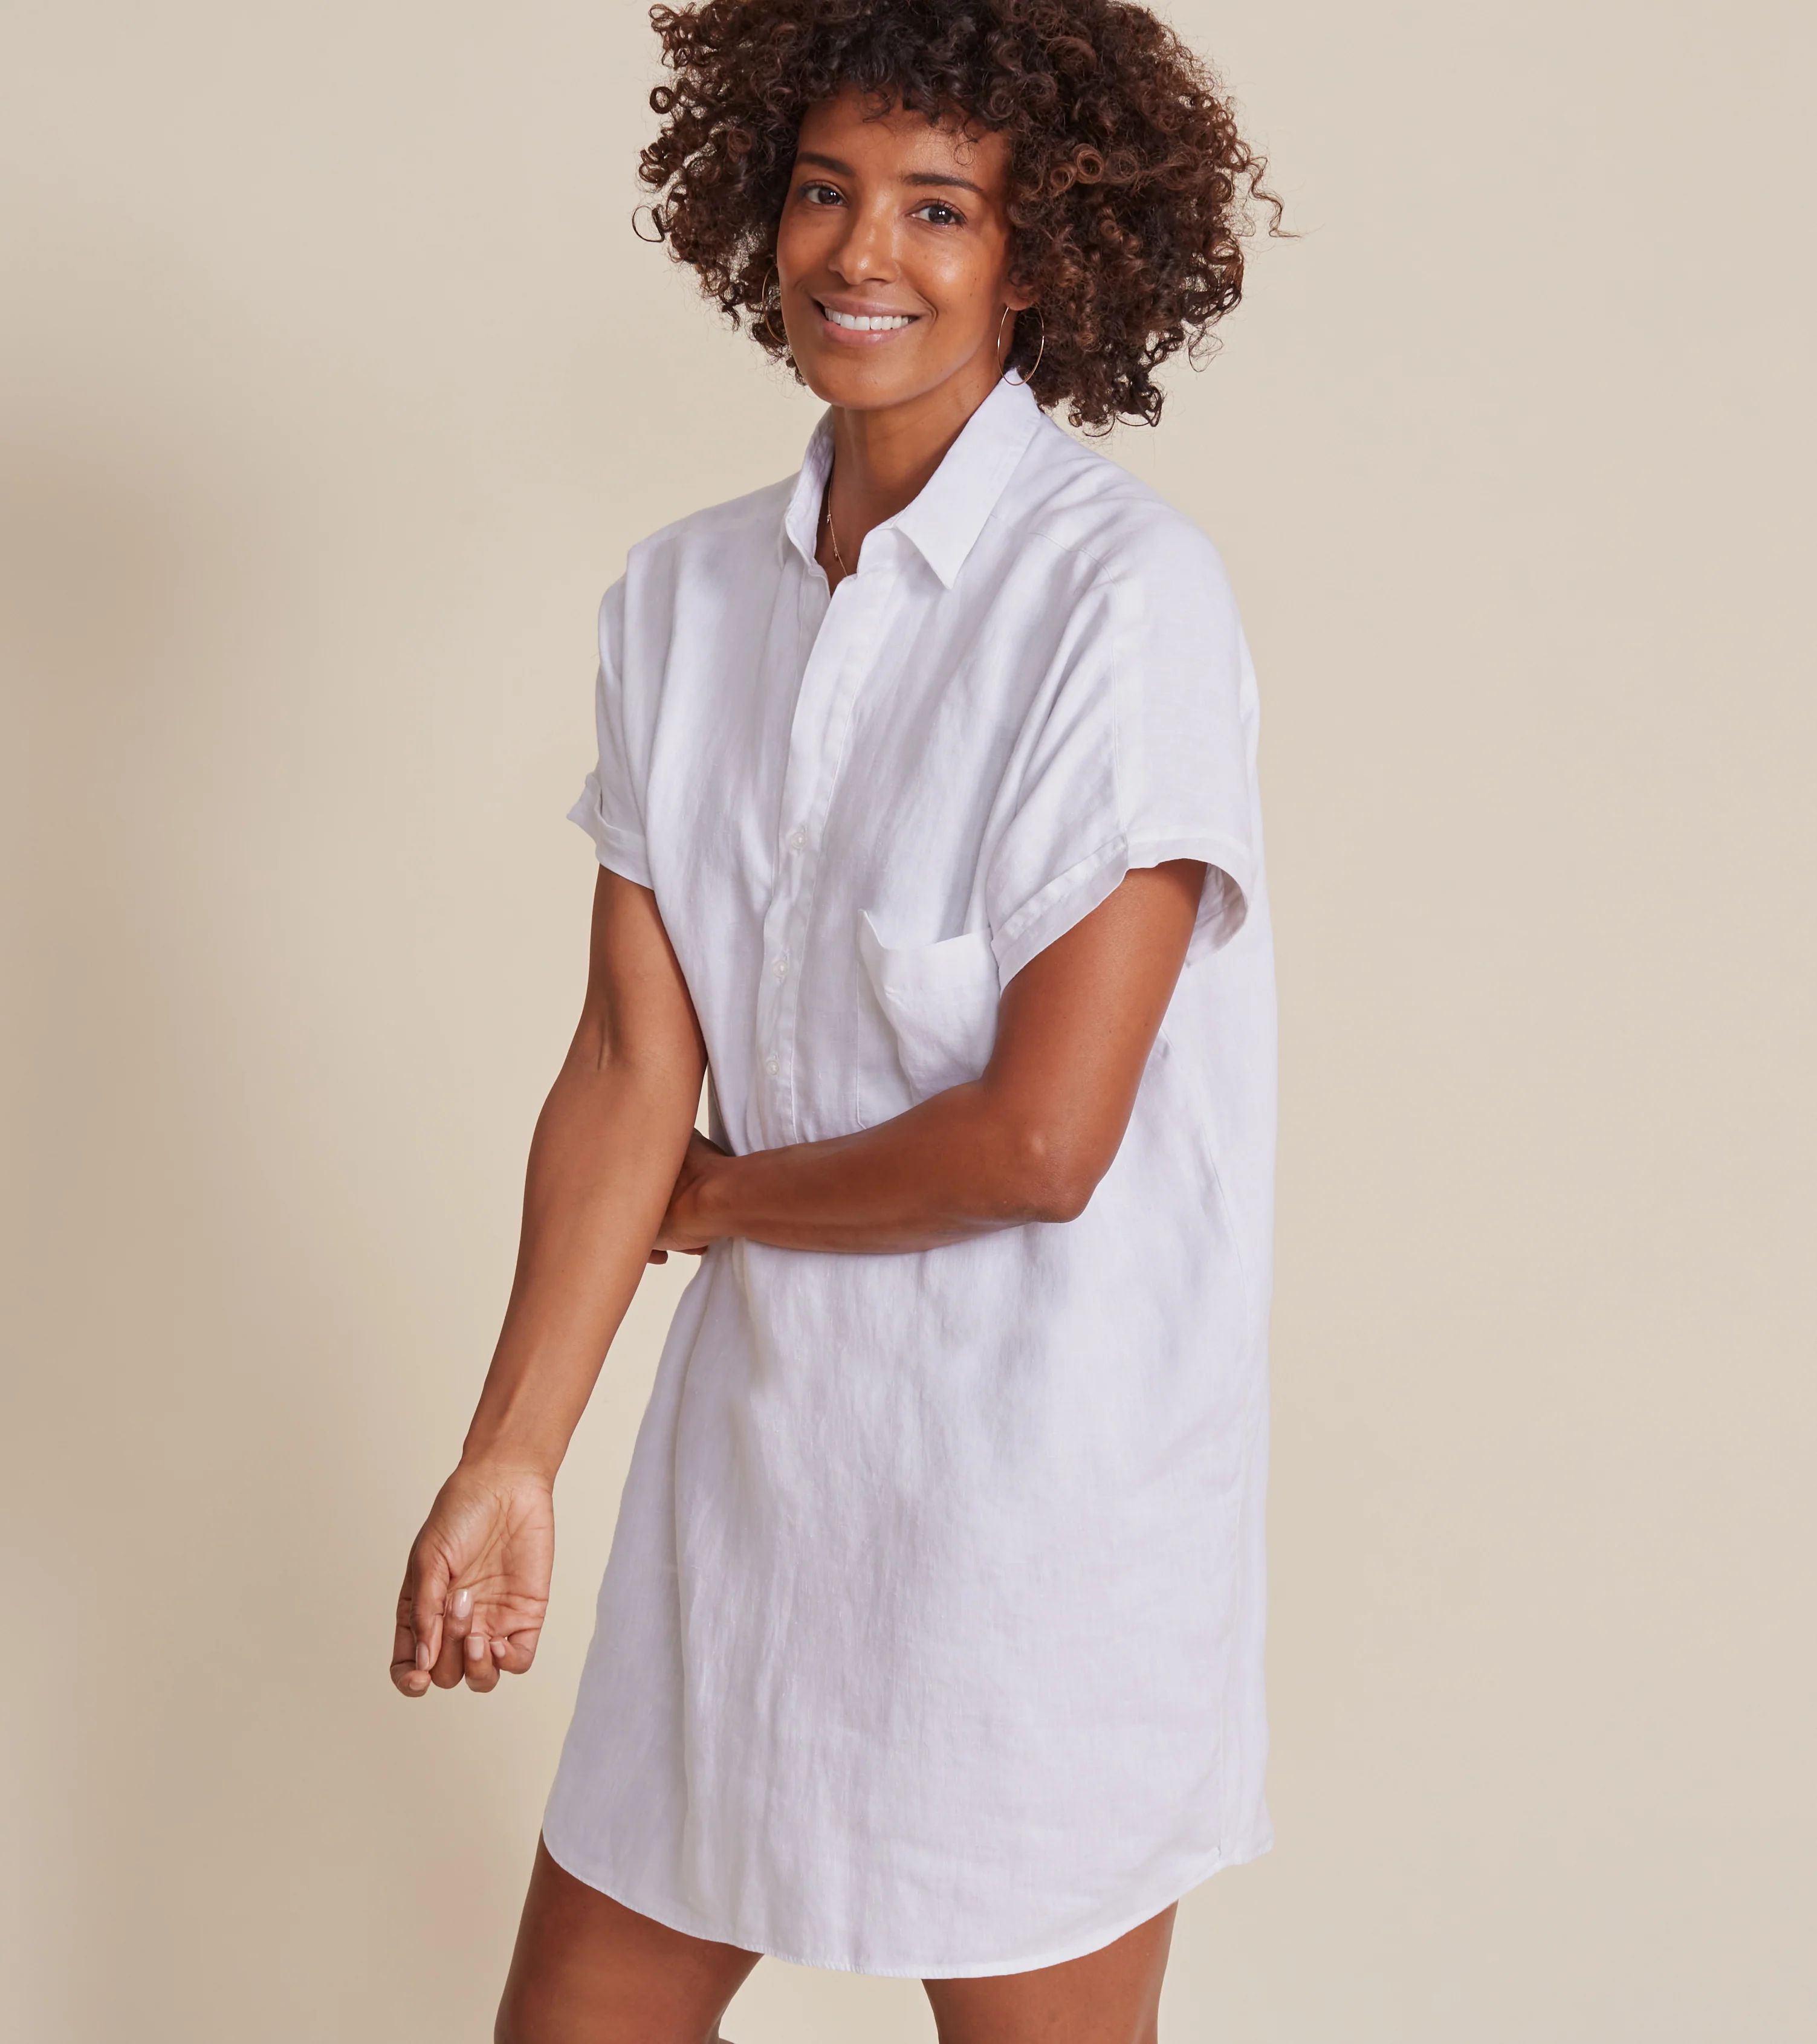 The Artist Short Sleeve Dress White, Tumbled Linen | Grayson